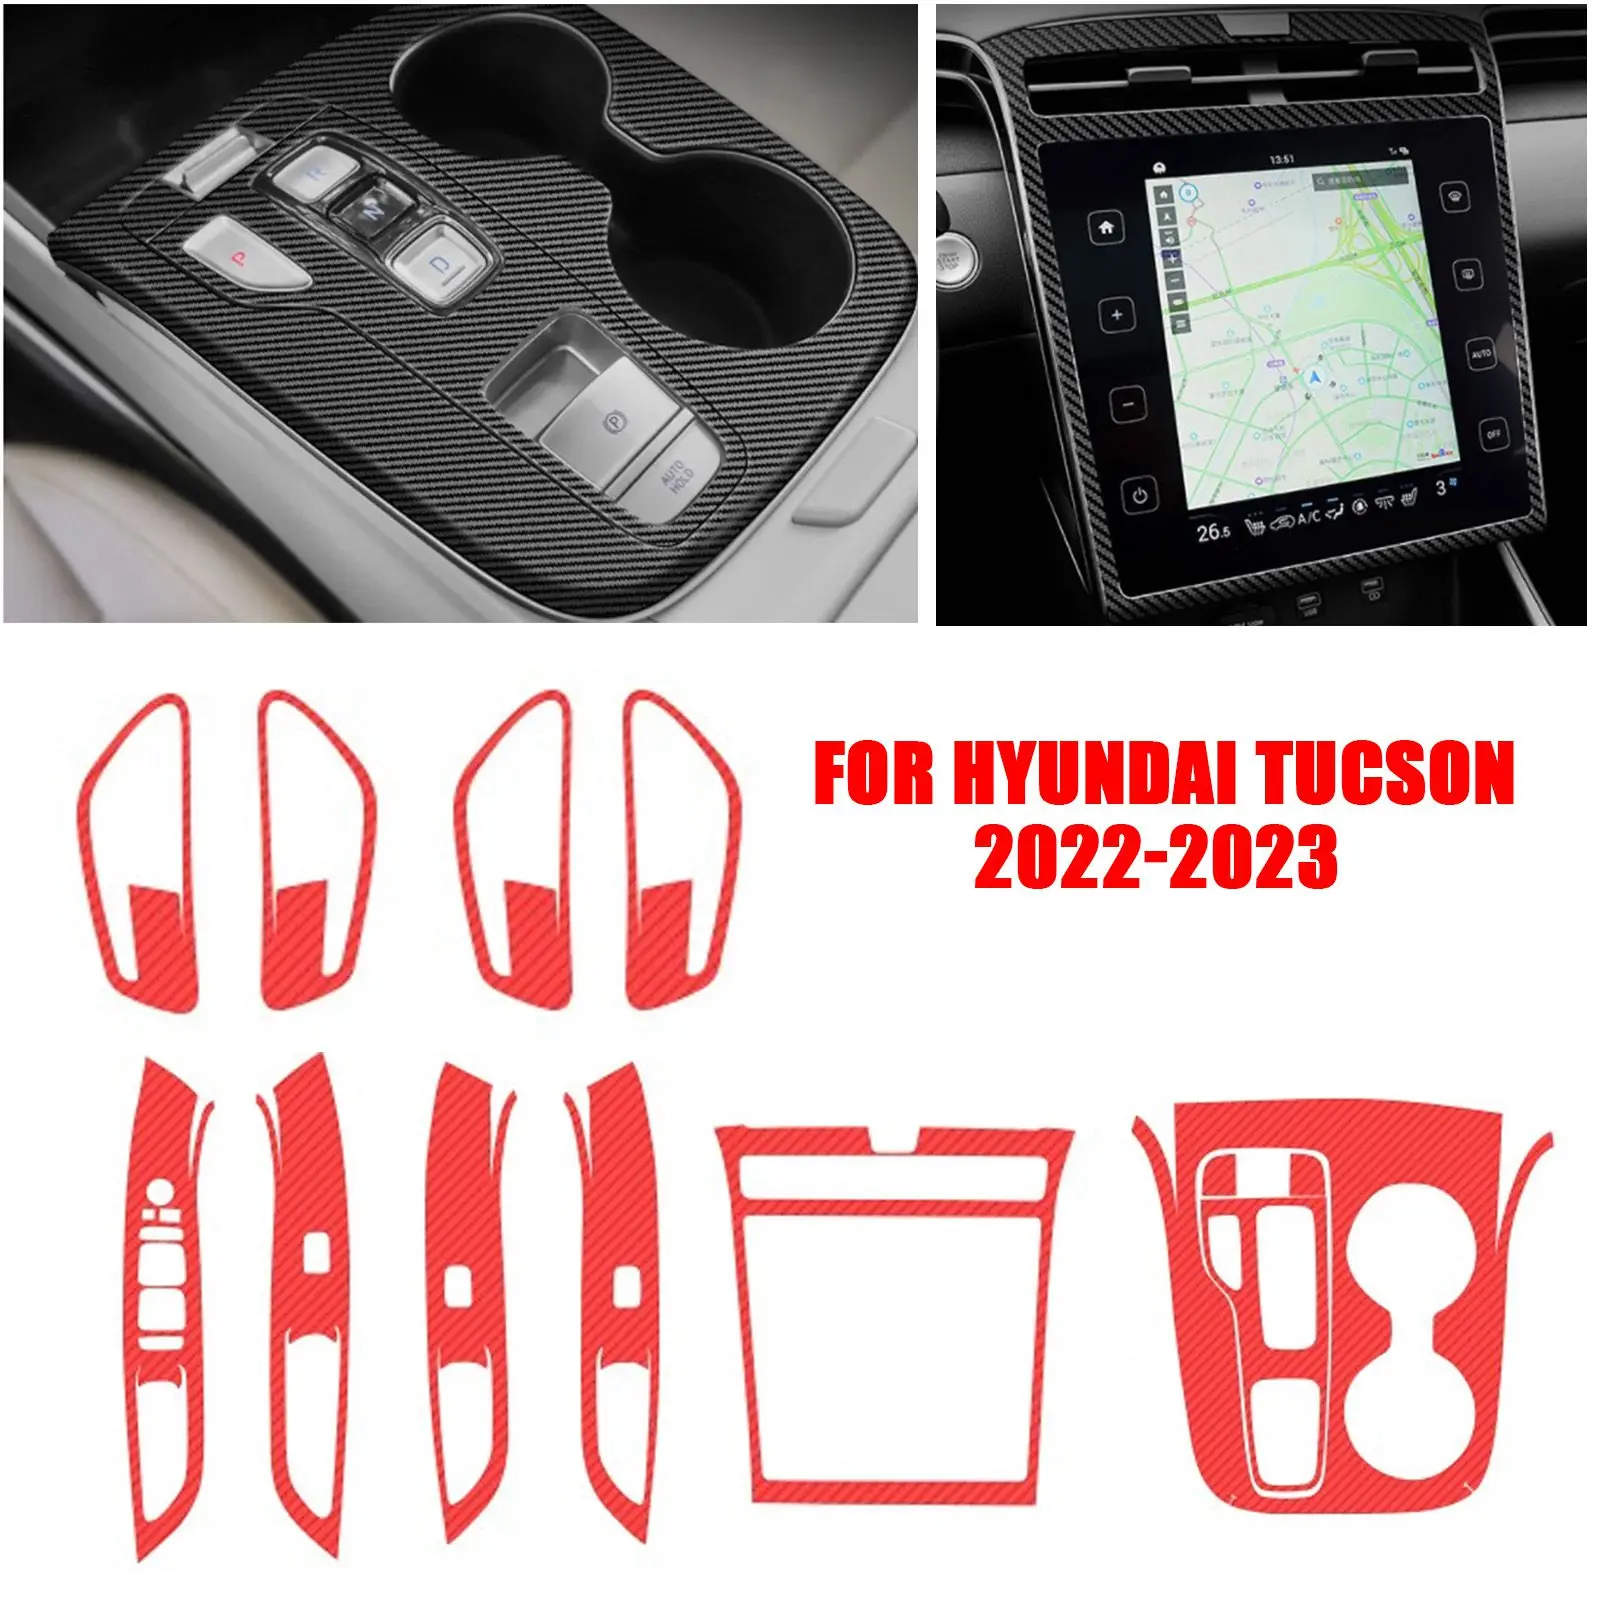 

Для Hyundai Tucson 2022-2023 украшение центрального контроллера, меняющая цвет пленка, модификация интерьера, наклейки из углеродного волокна